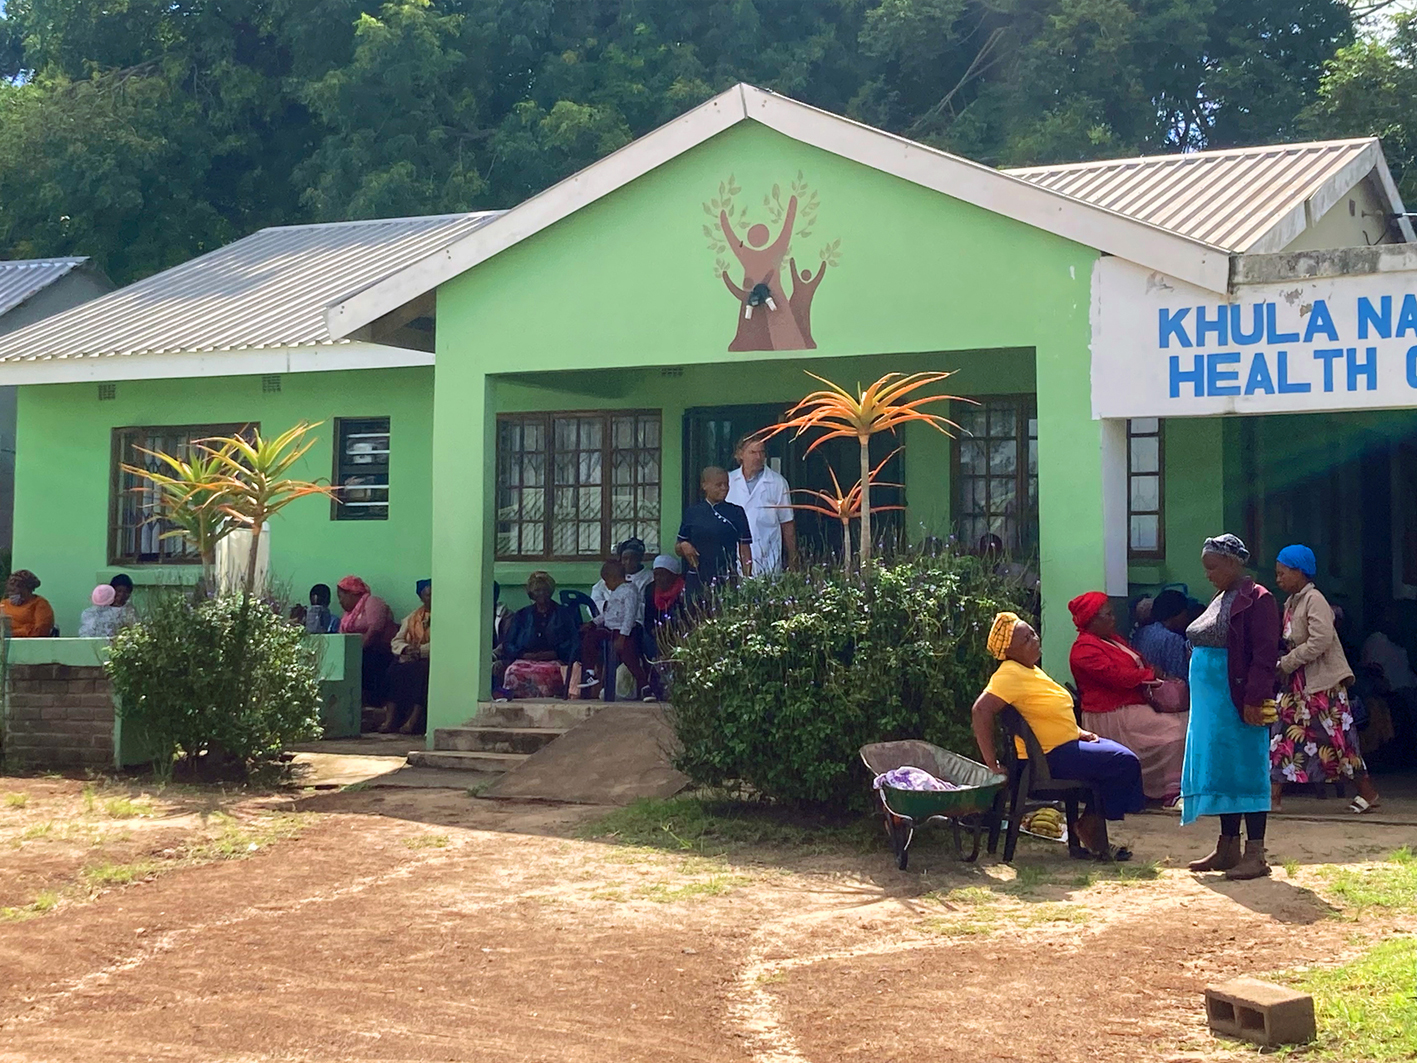 Das Chula Natural Health Centre in der Nähe von St. Lucia in der Region KwaZula-Natal.